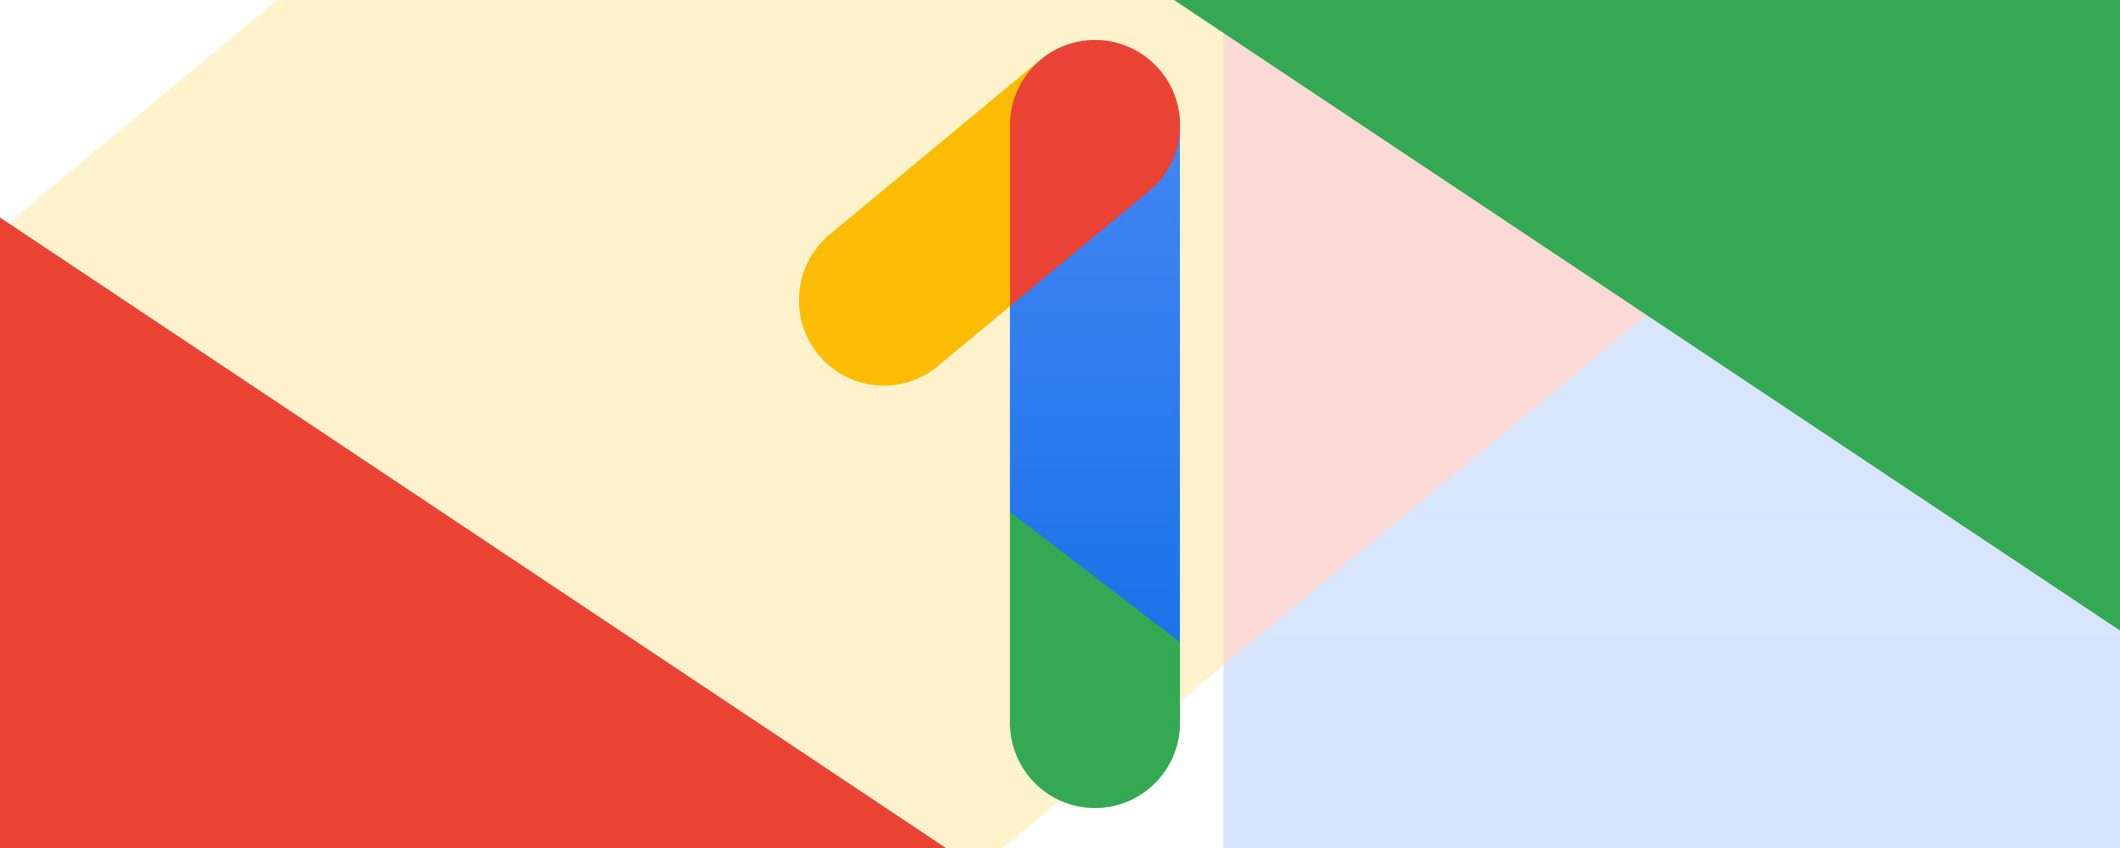 Google One continua a crescere: 100M di abbonati